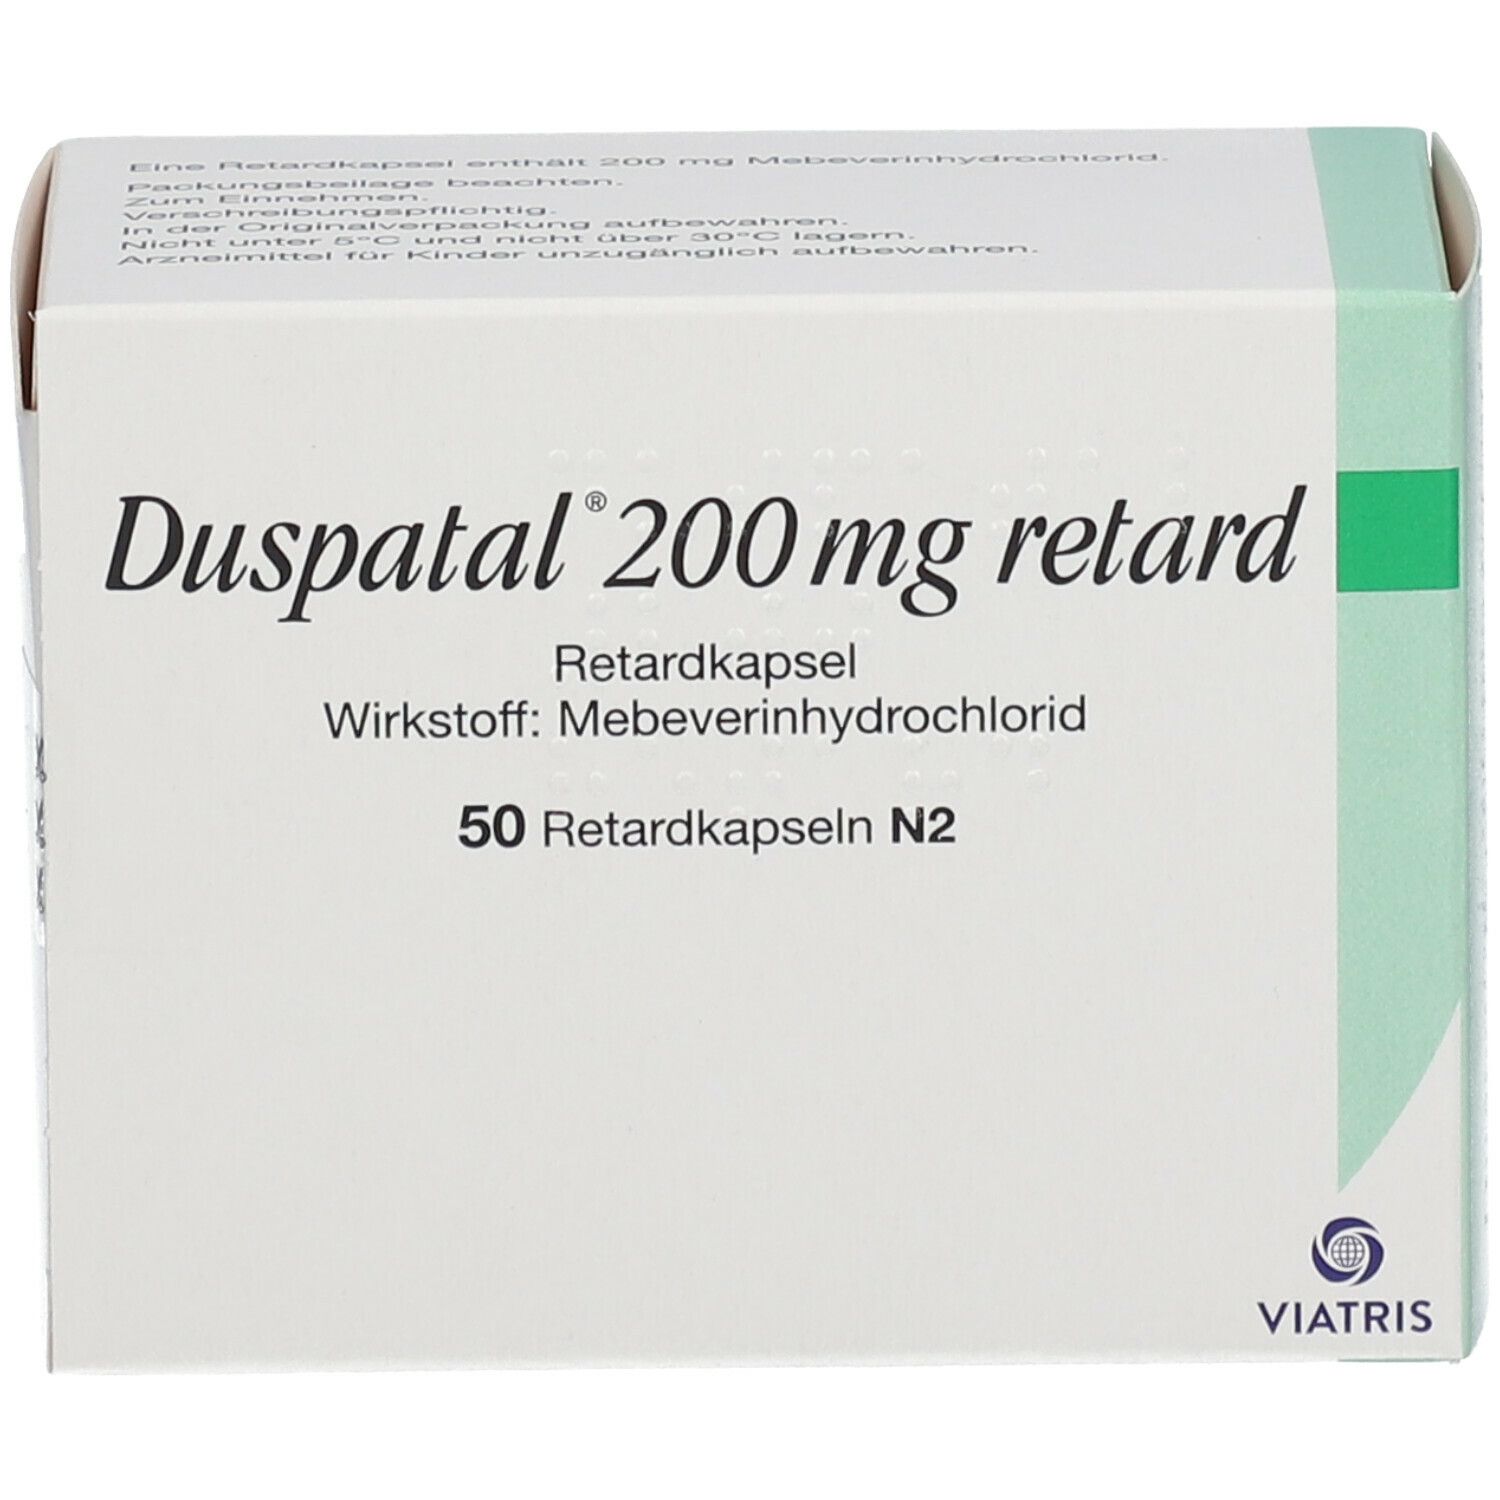 Duspatal® 200 mg retard